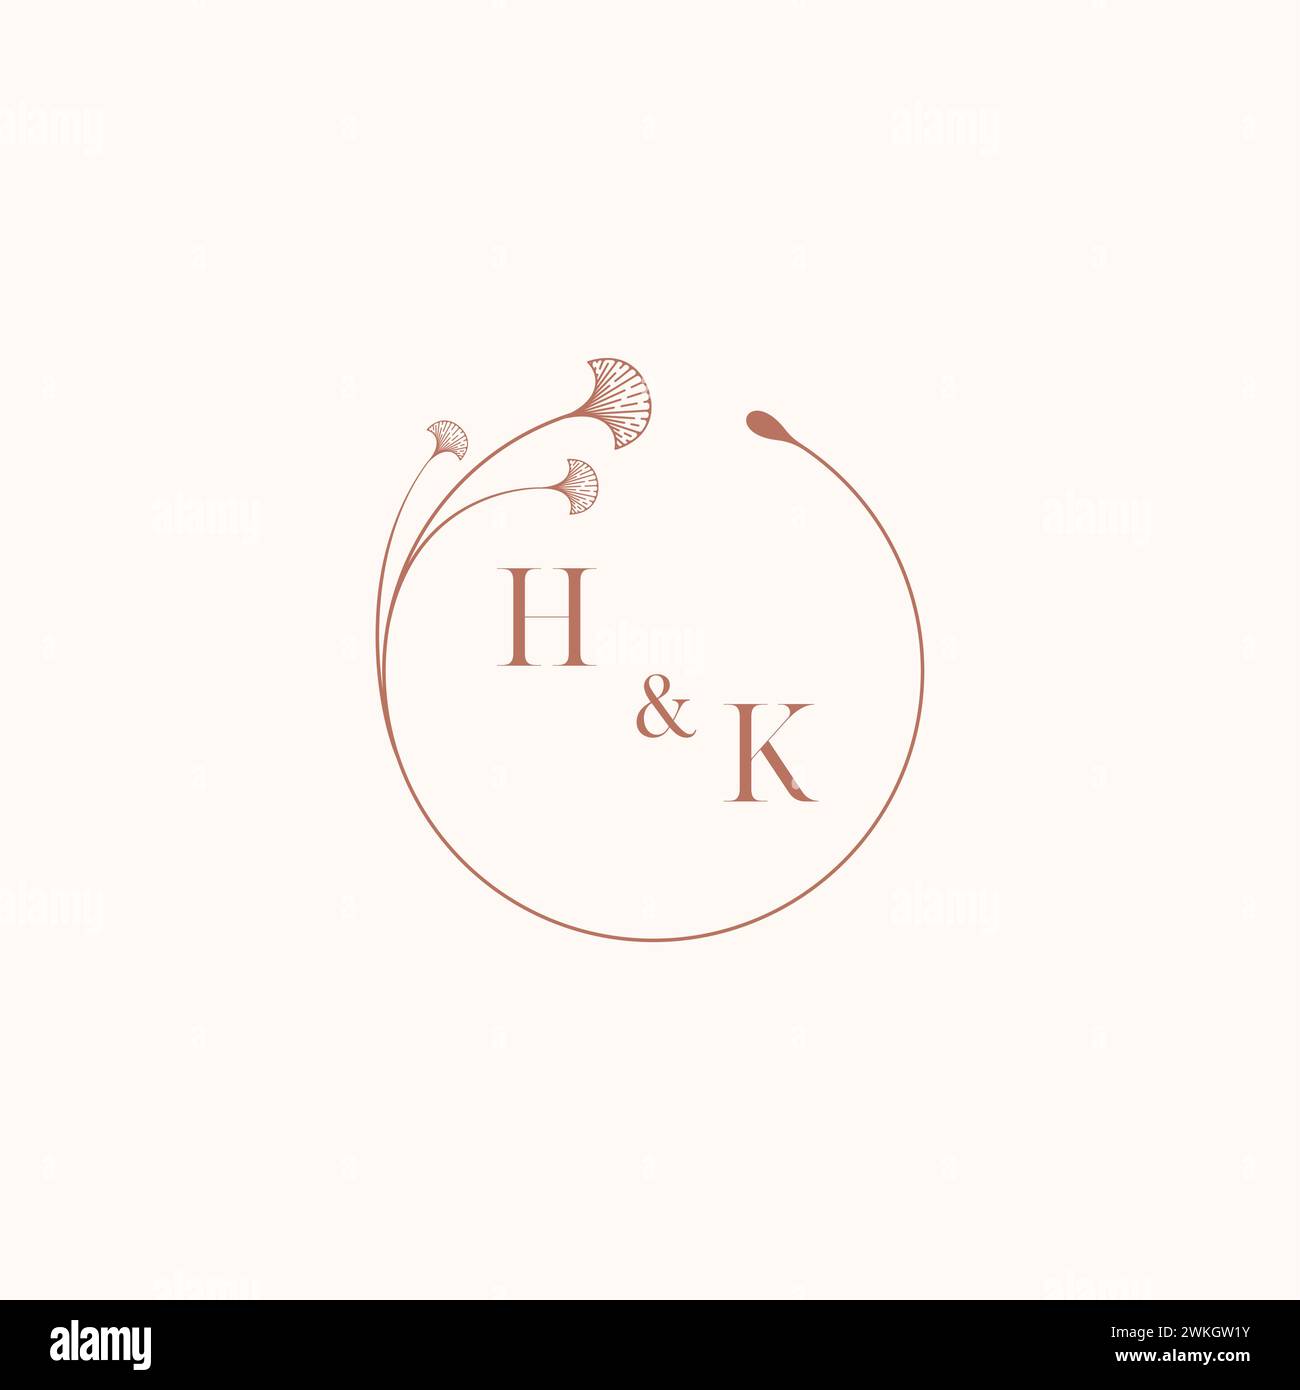 HK wedding monogram logo designideas as inspiration Stock Vector